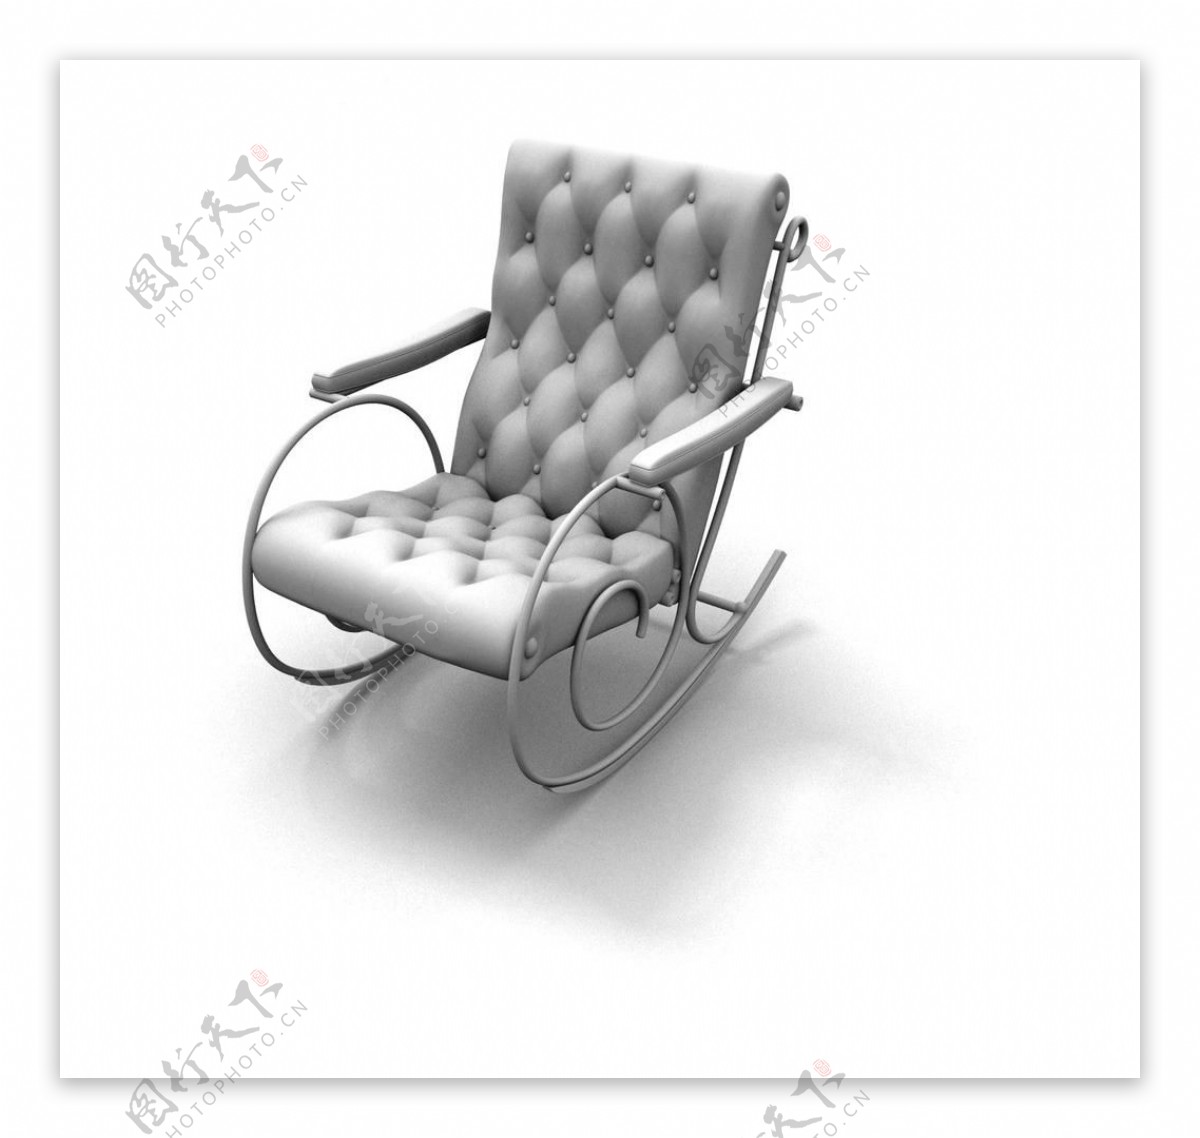 椅子模型办公室椅子图片